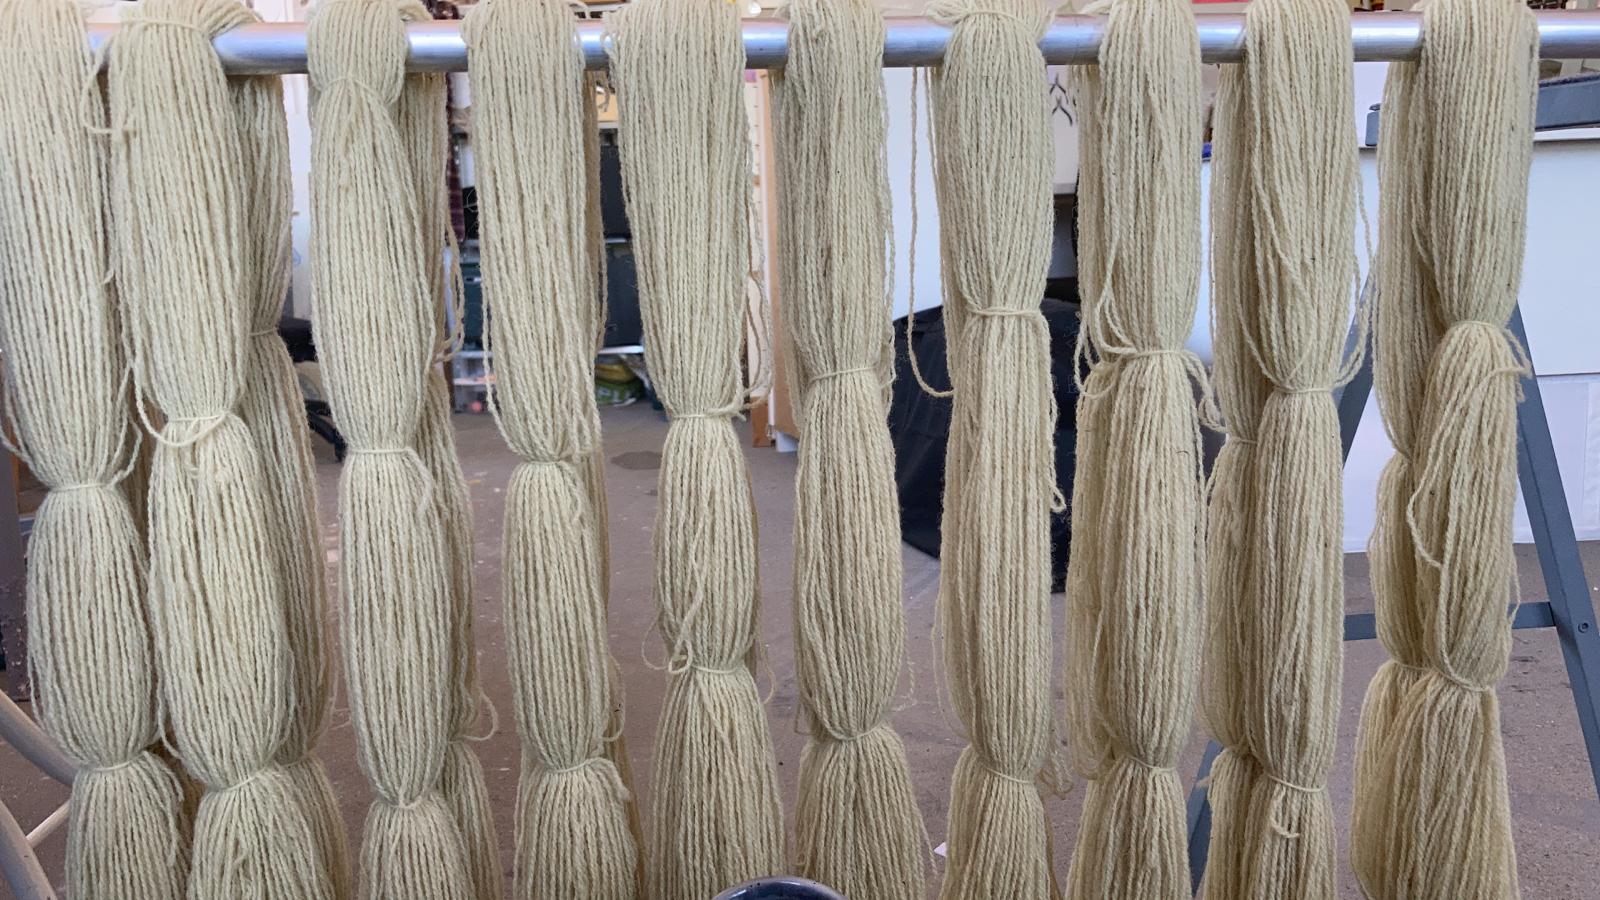 Nettle-dyed wool yarn in Angelica Falkeling's studio